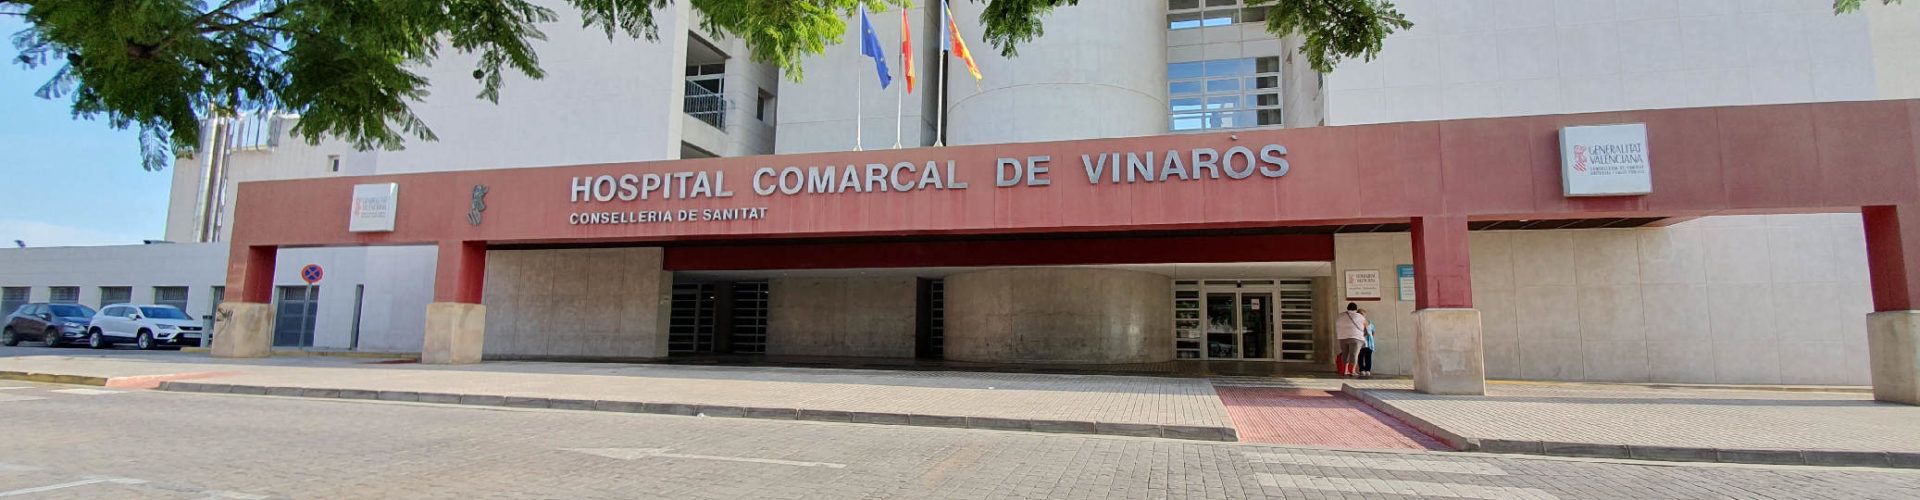 La asociación de enfermos mentales reclama una solución para los ingresos psiquiátricos en Vinaròs